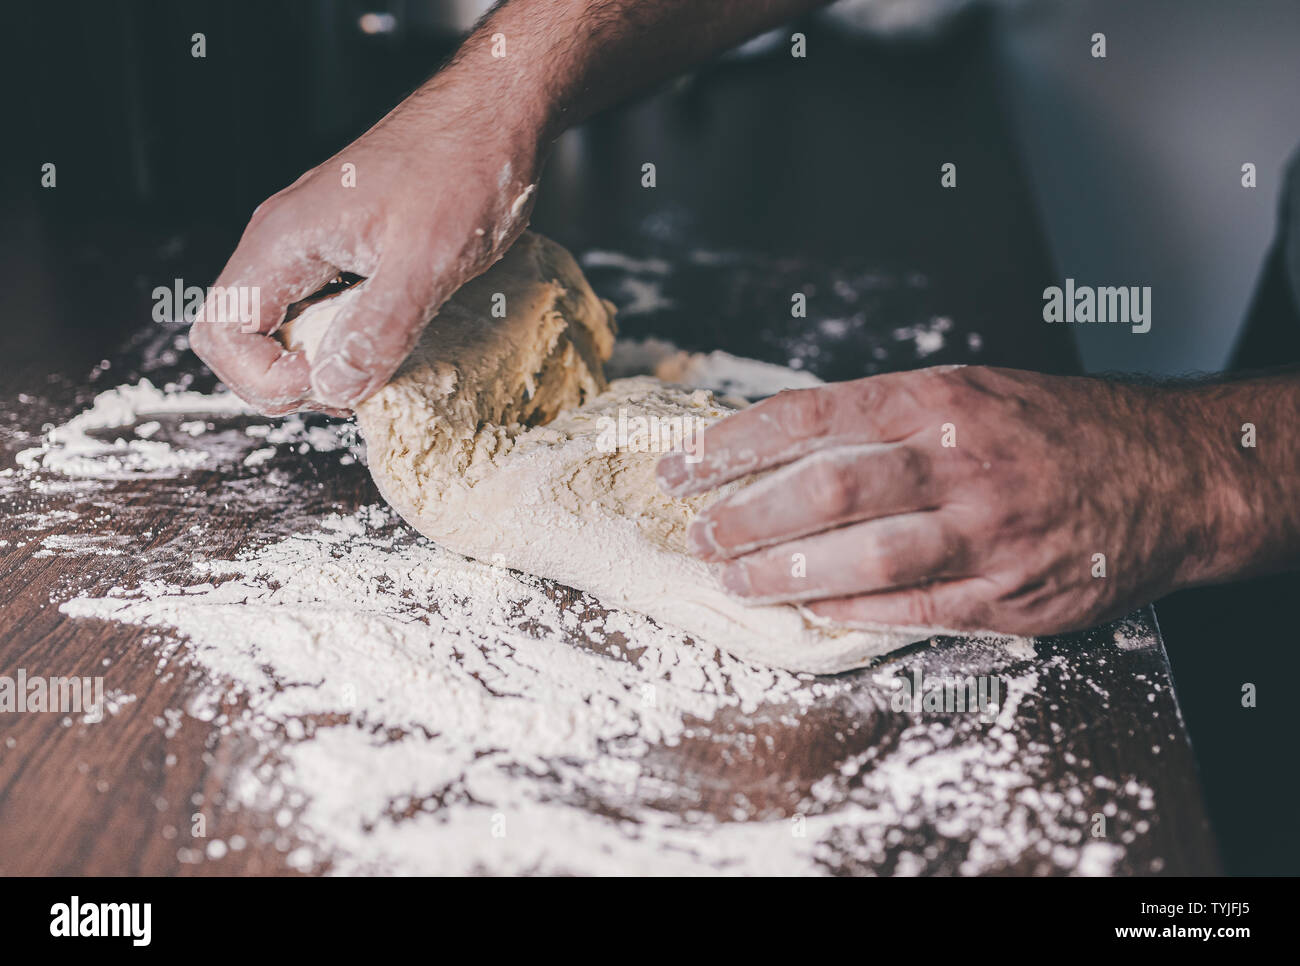 Nahaufnahmen der Hände des Menschen beim Kneten von Teig auf der Bemehlten Arbeitsplatte in der Küche Stockfoto